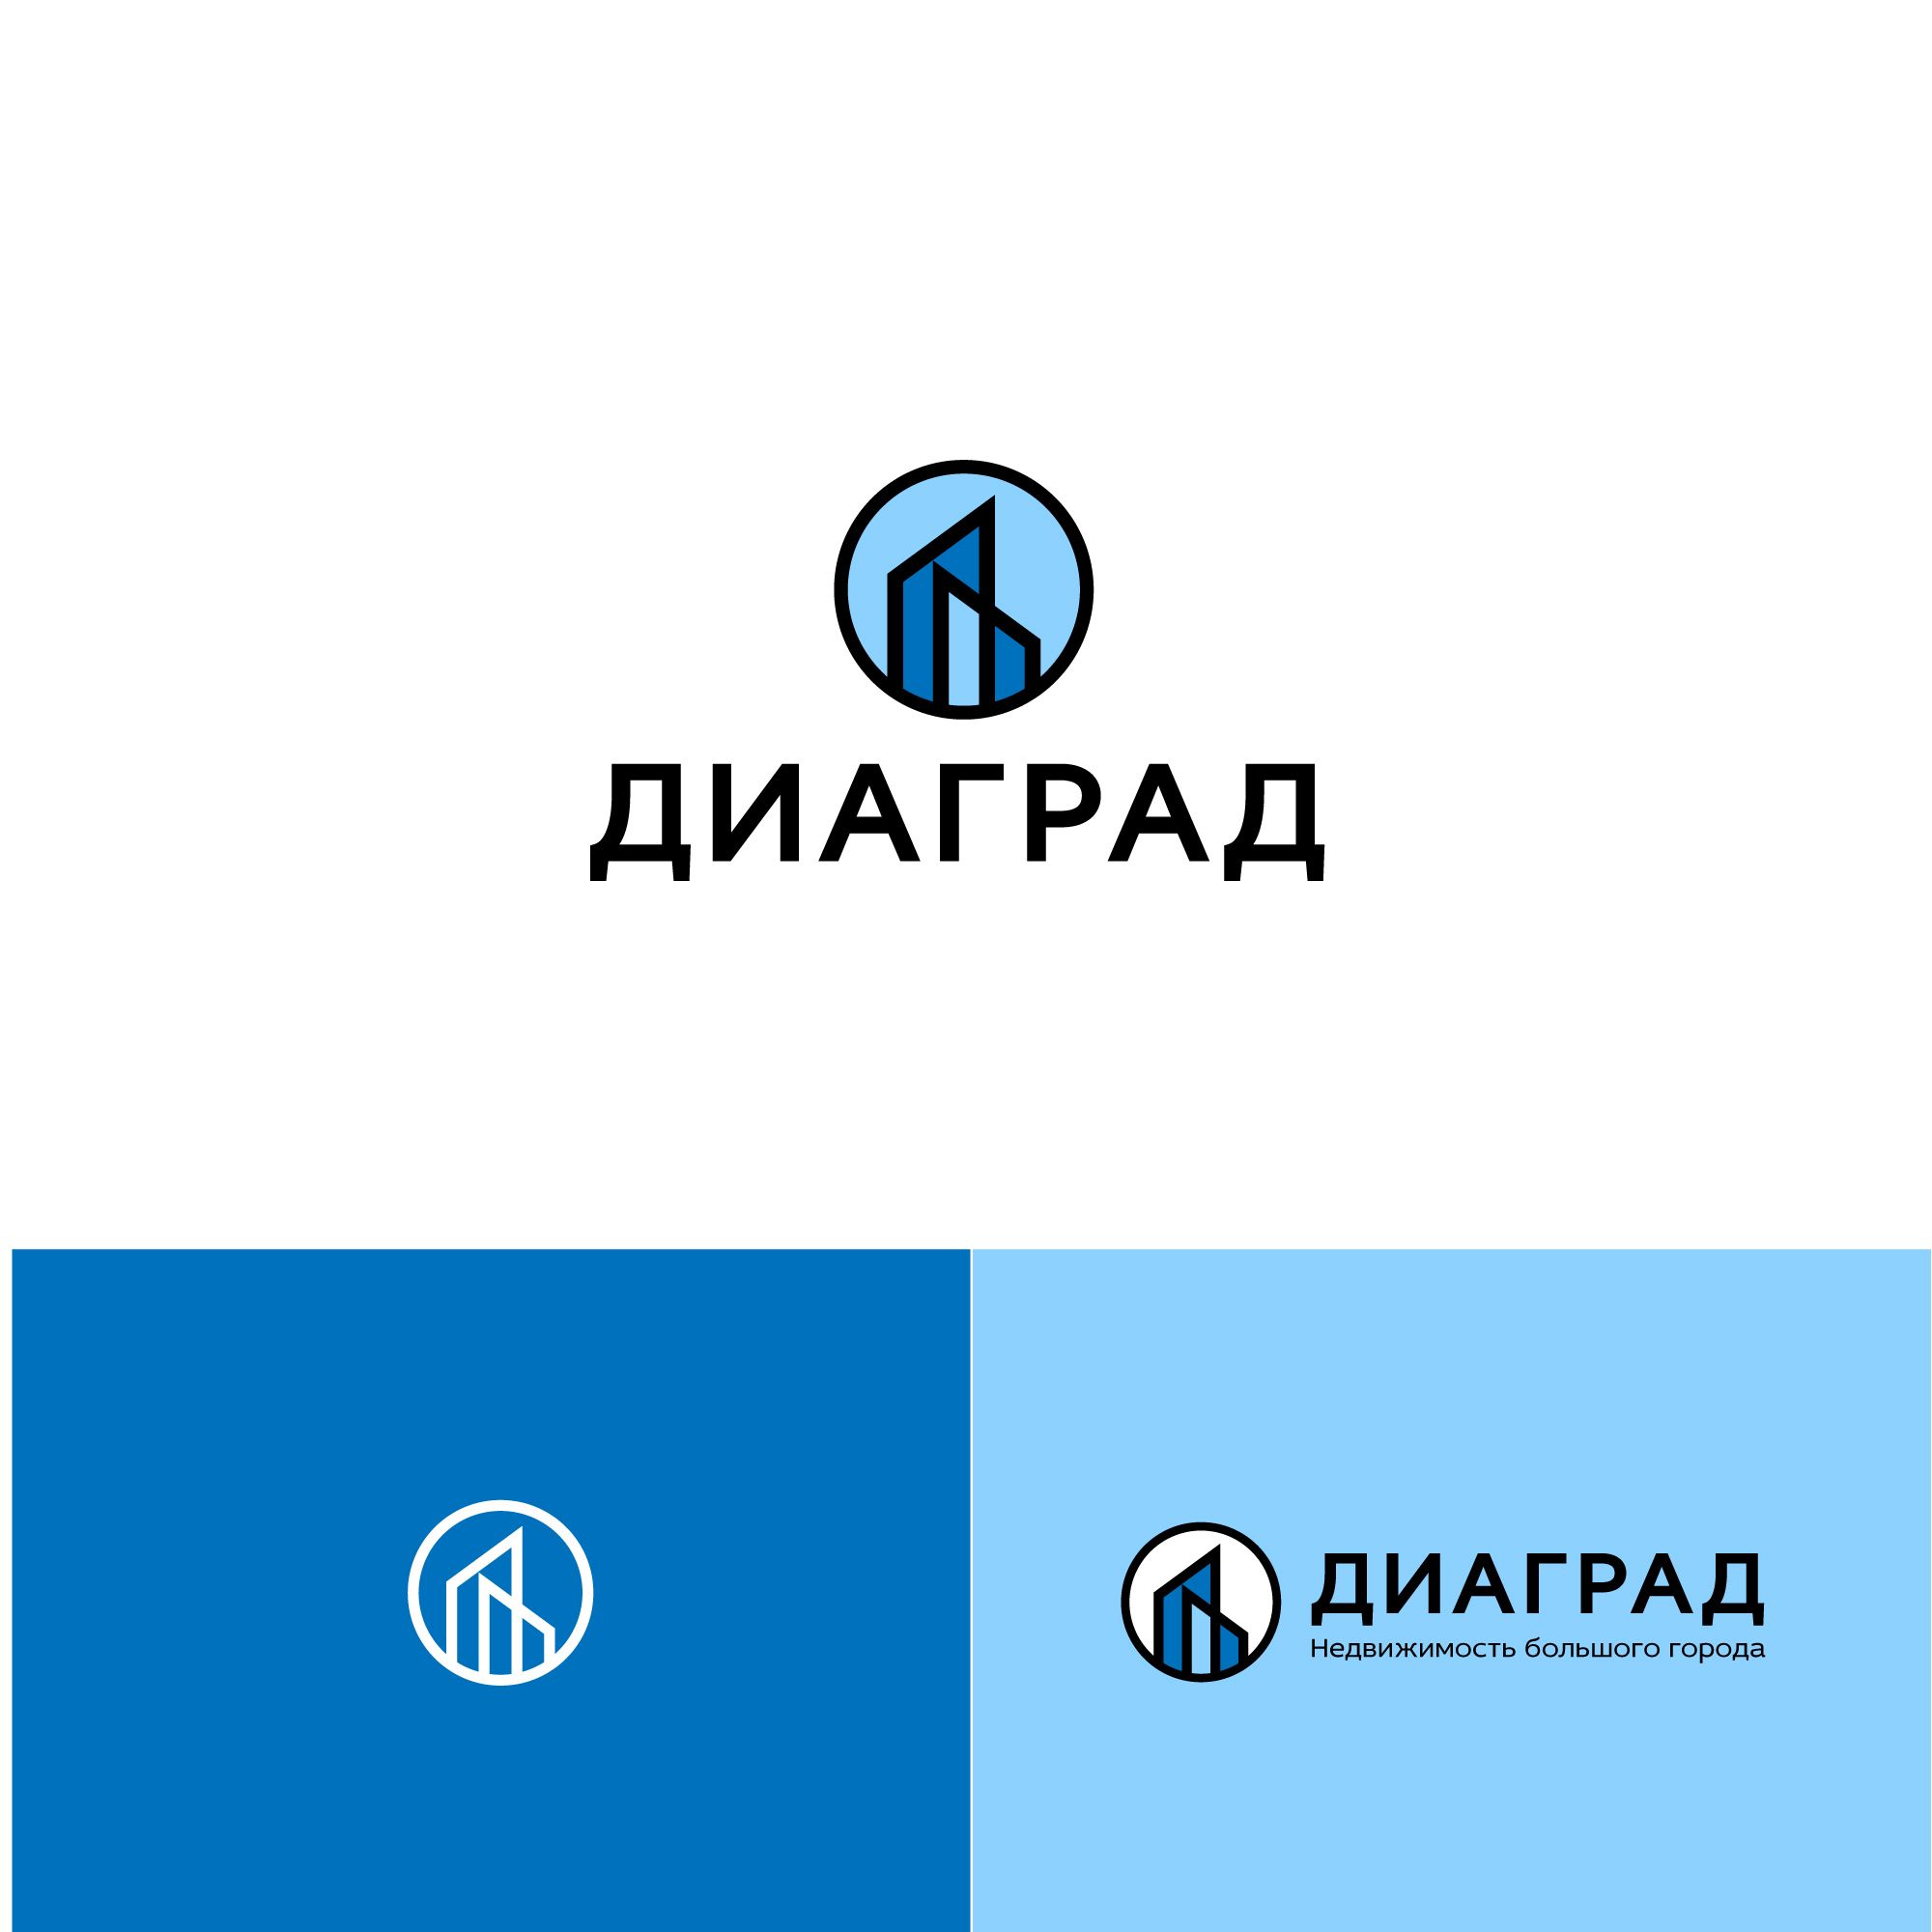 Логотип для Диаград - дизайнер designer12345